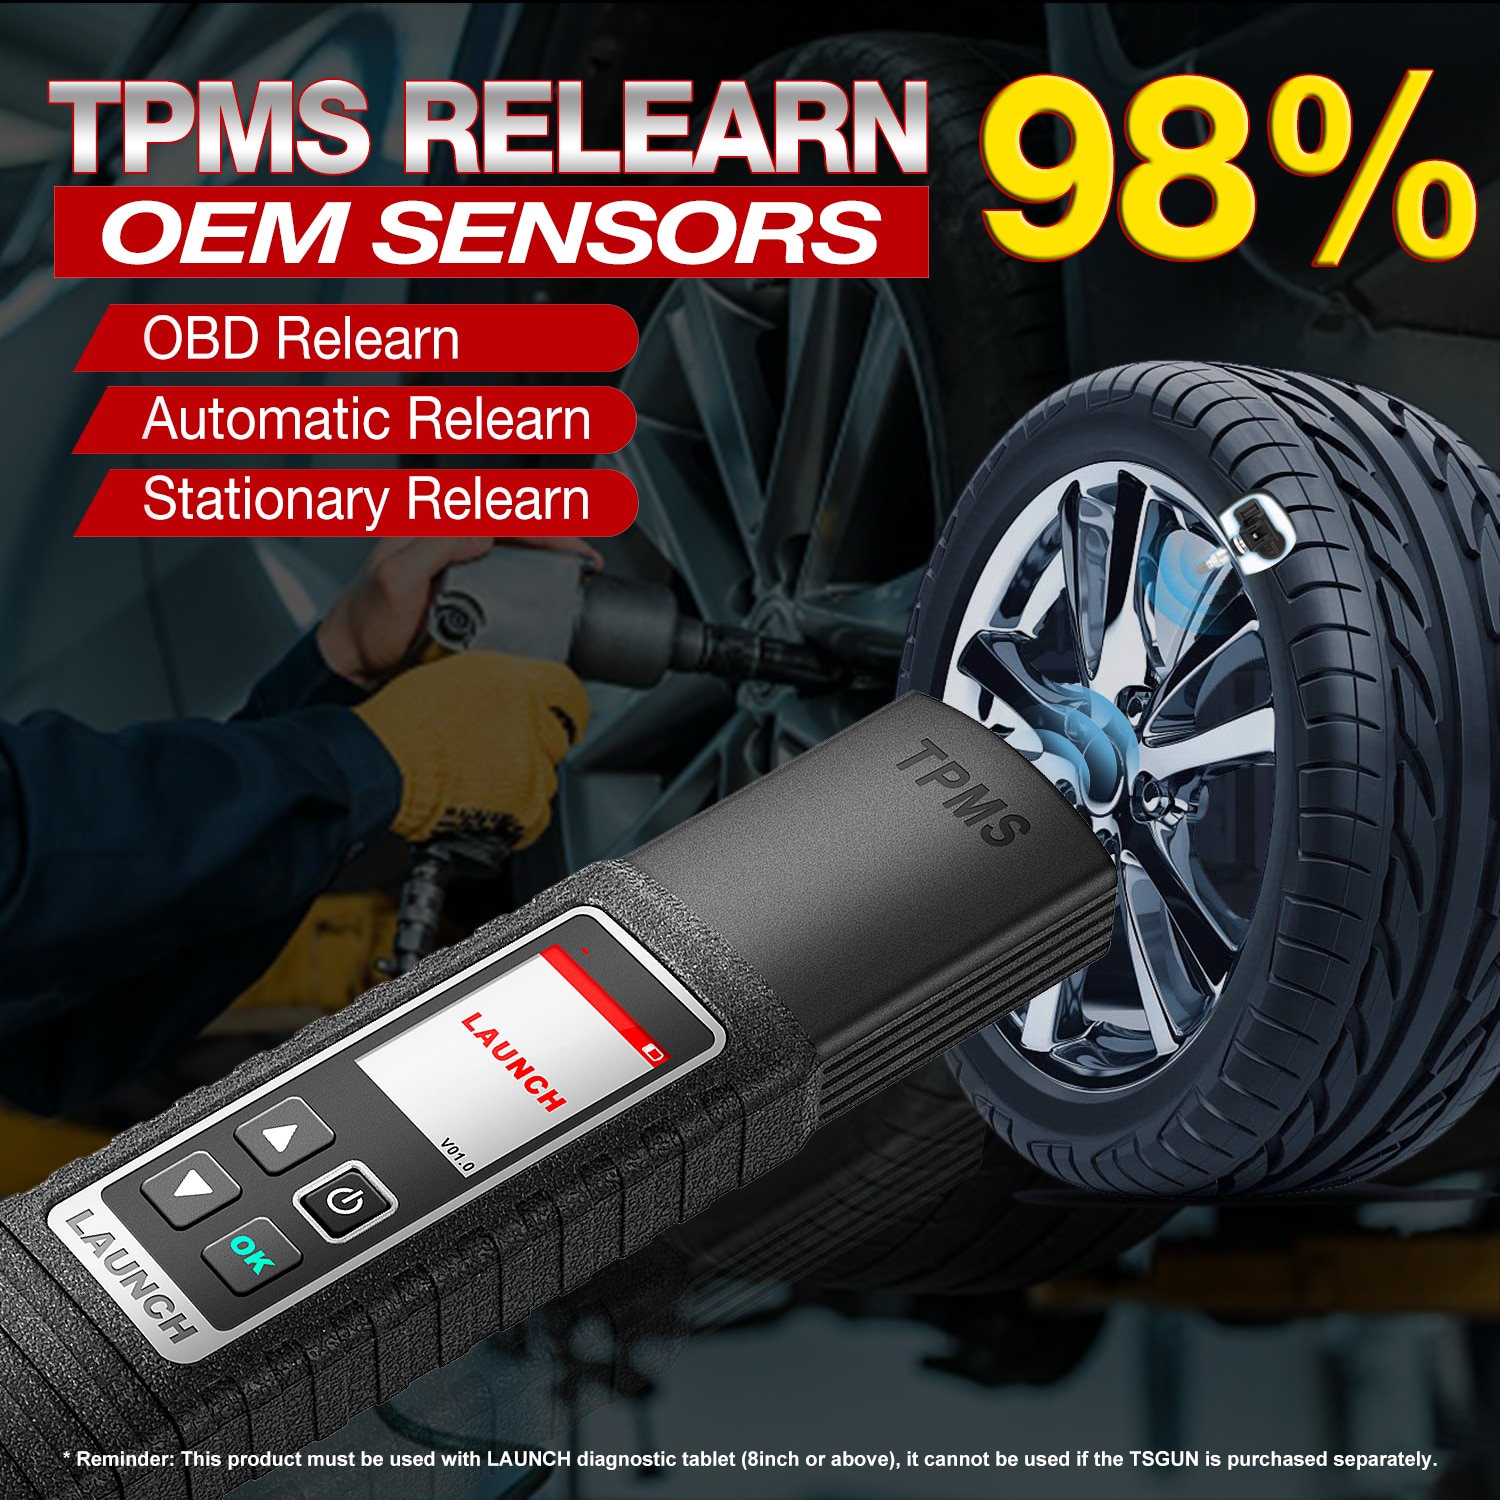 Launch X431 TSGUN TPMS Car Tire Pressure Detector 